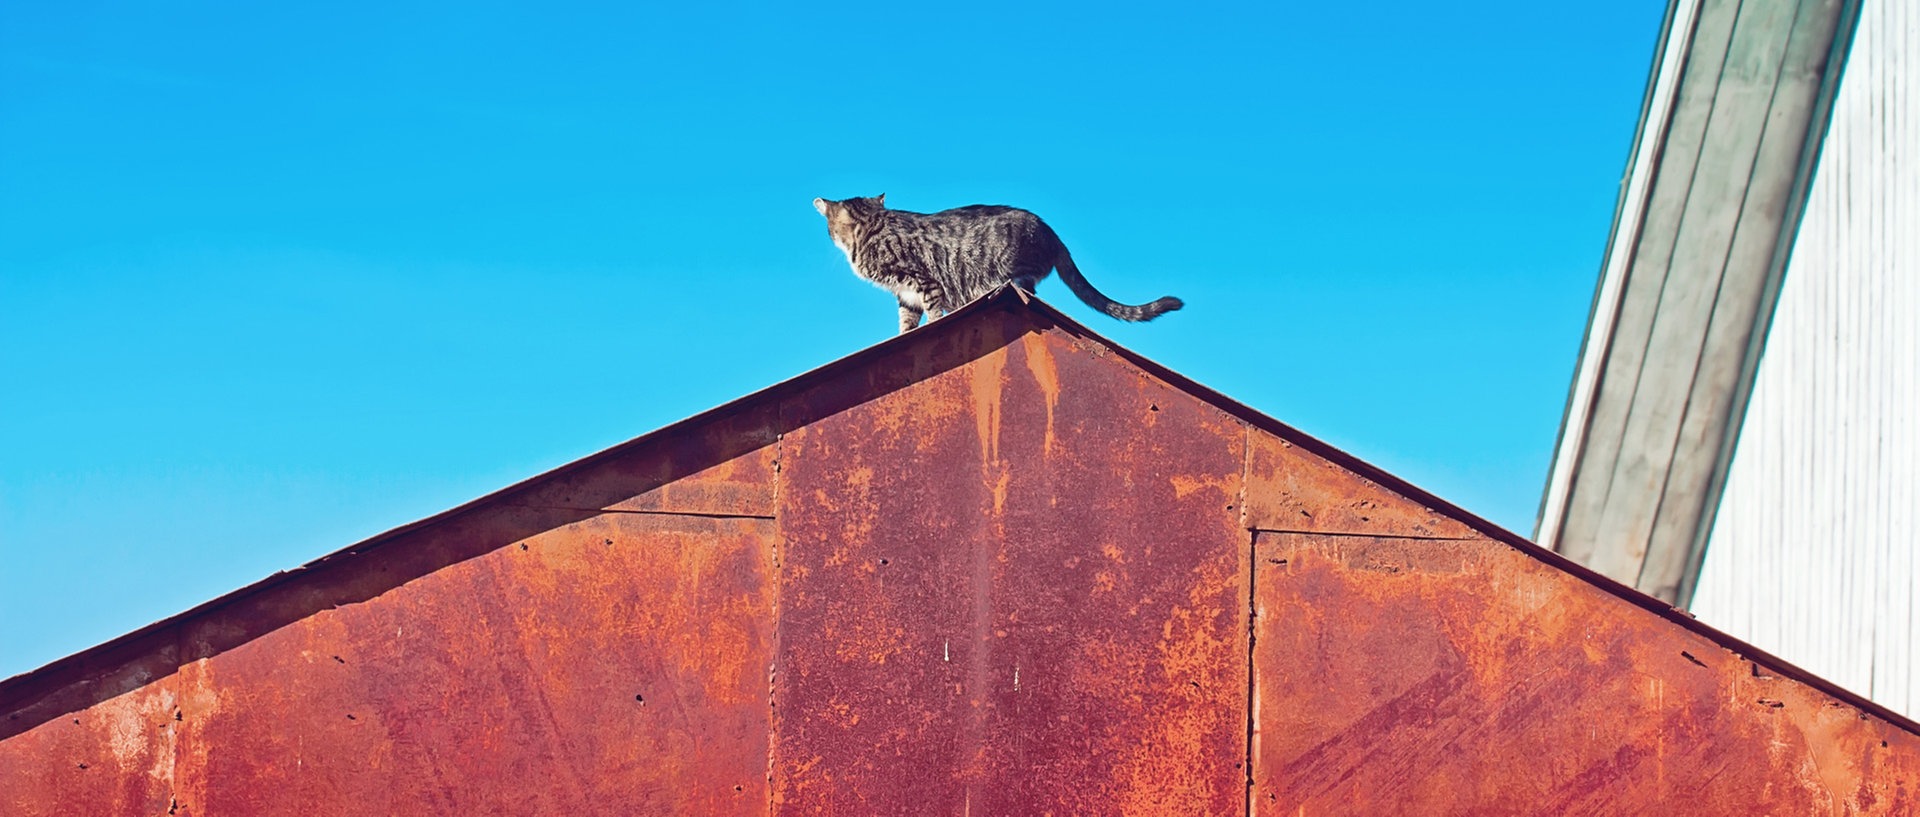 Zu sehen ist eine Katze, die auf einem rostigen Dach steht und in den blauen Himmel schaut., © oxygen2608 / photocase.deFoto: oxygen2608